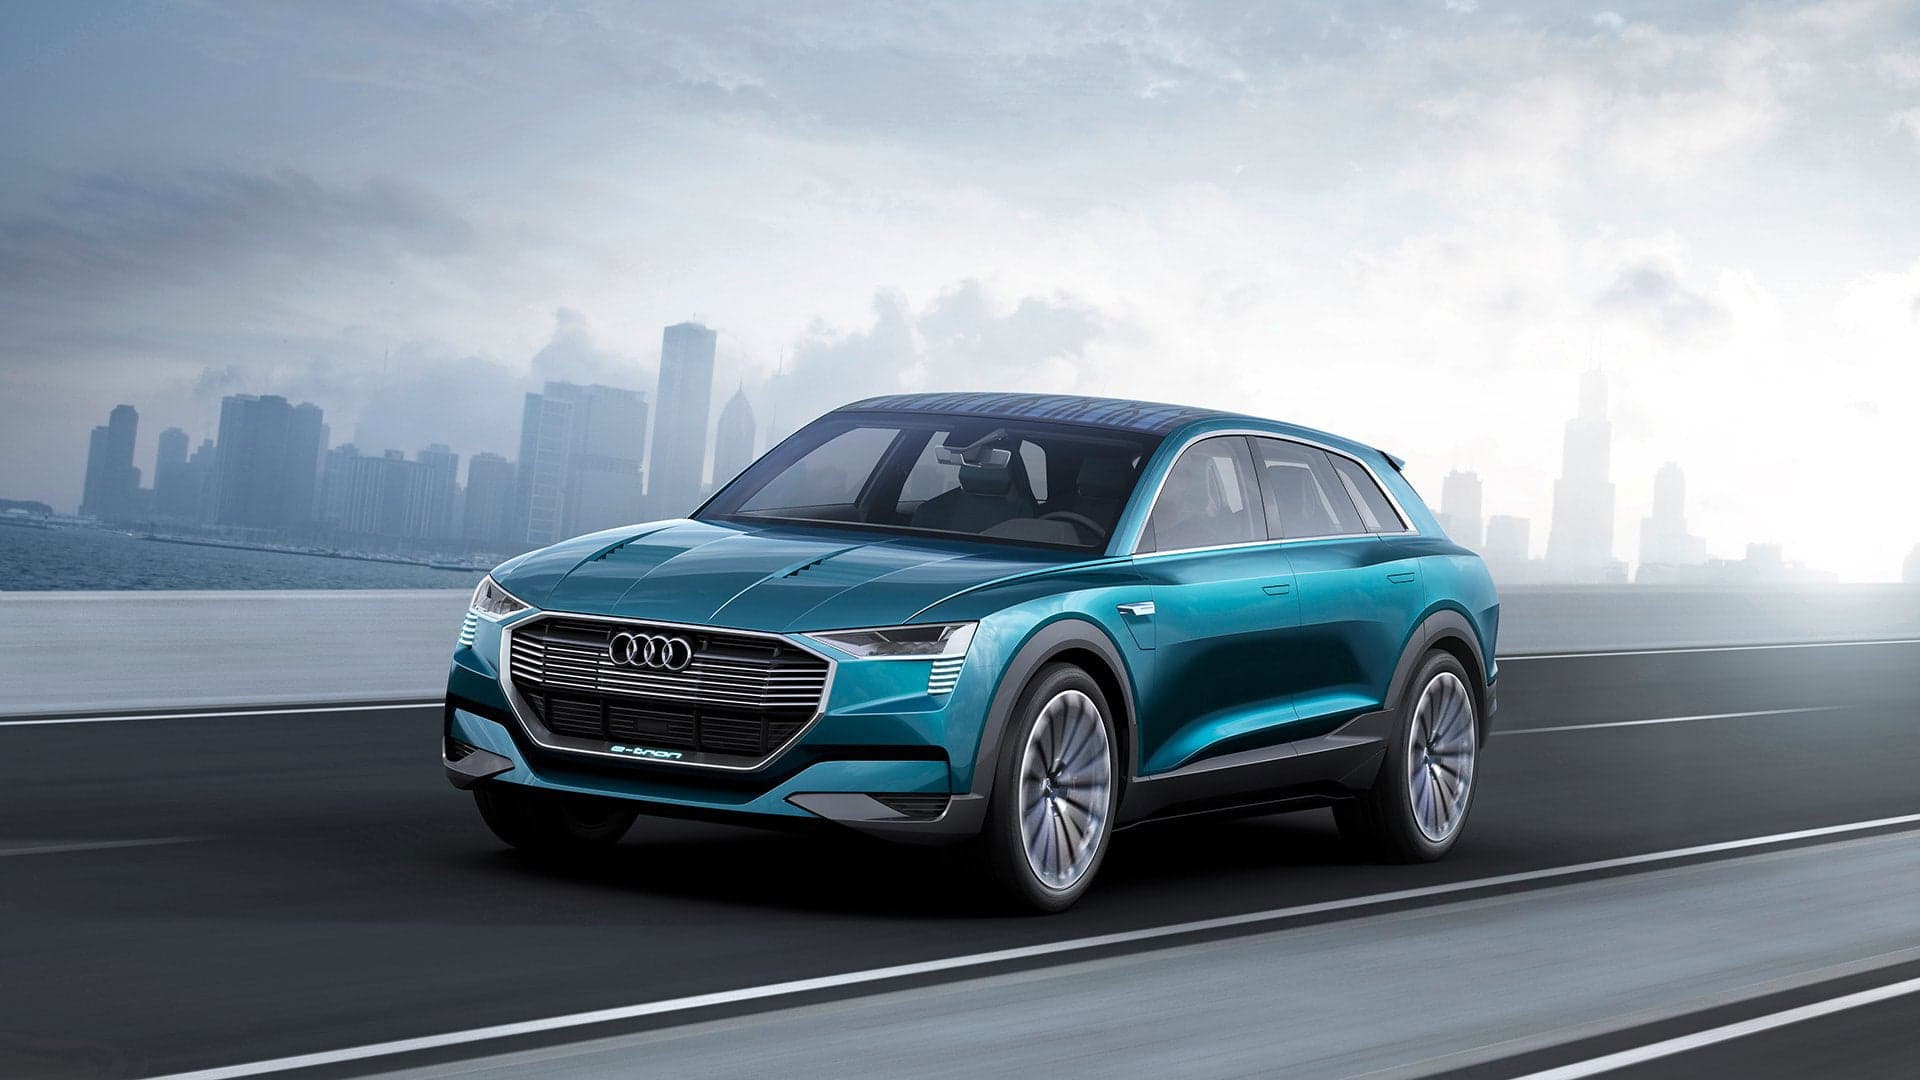 Audi Q6 H-tron Hydrogen CUV Gasses Toward Detroit